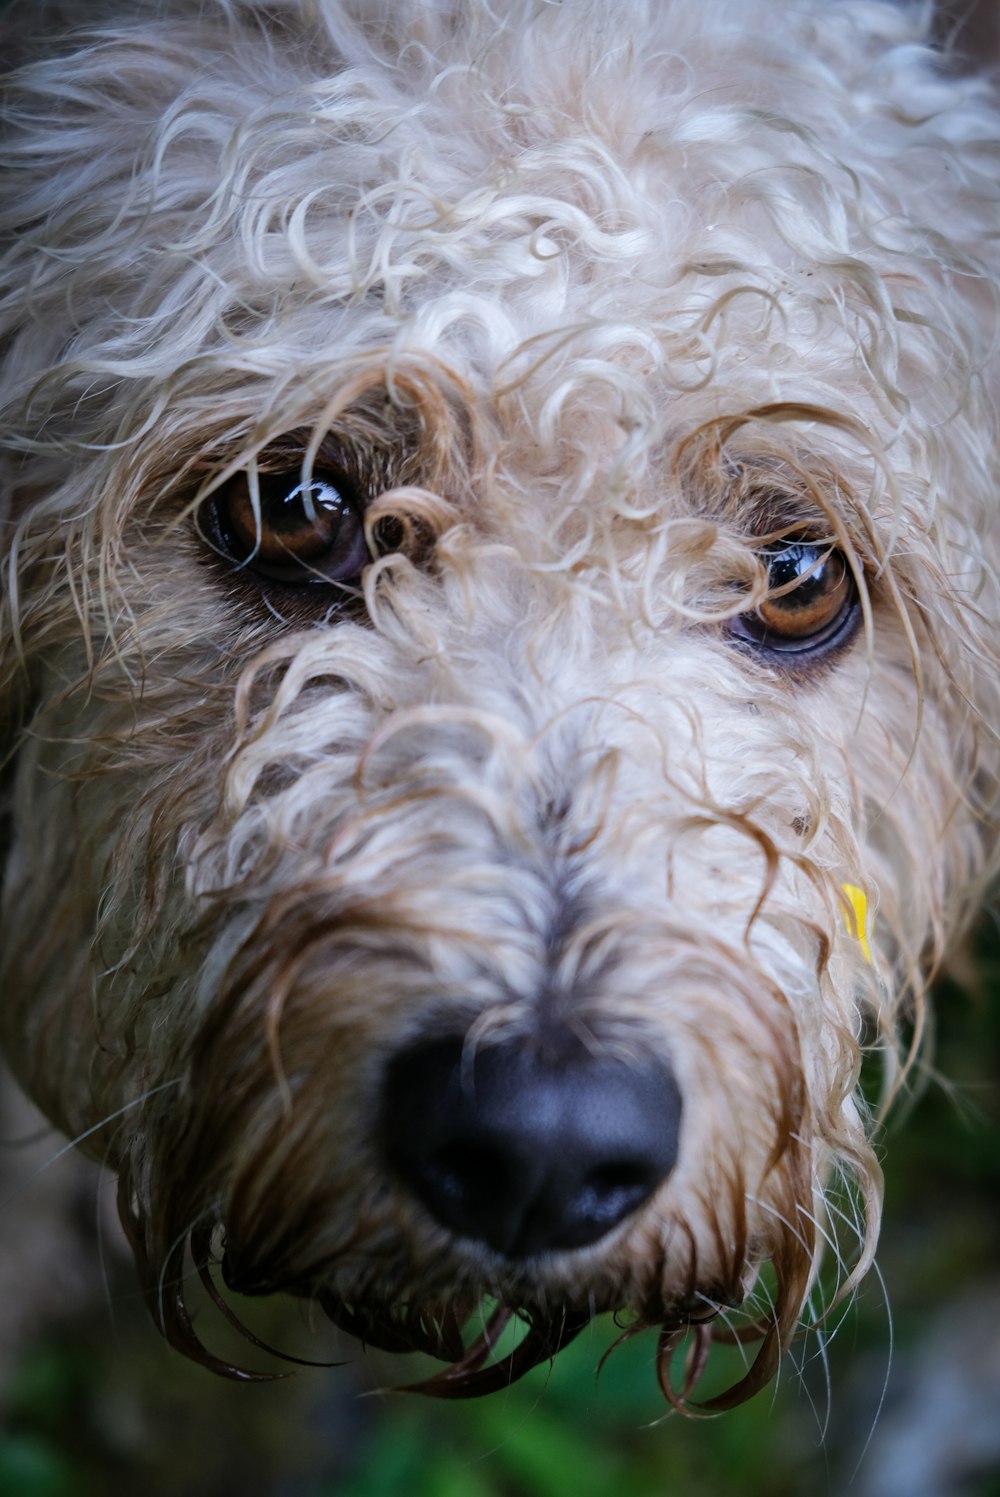 close-up photo of long-coated white dog